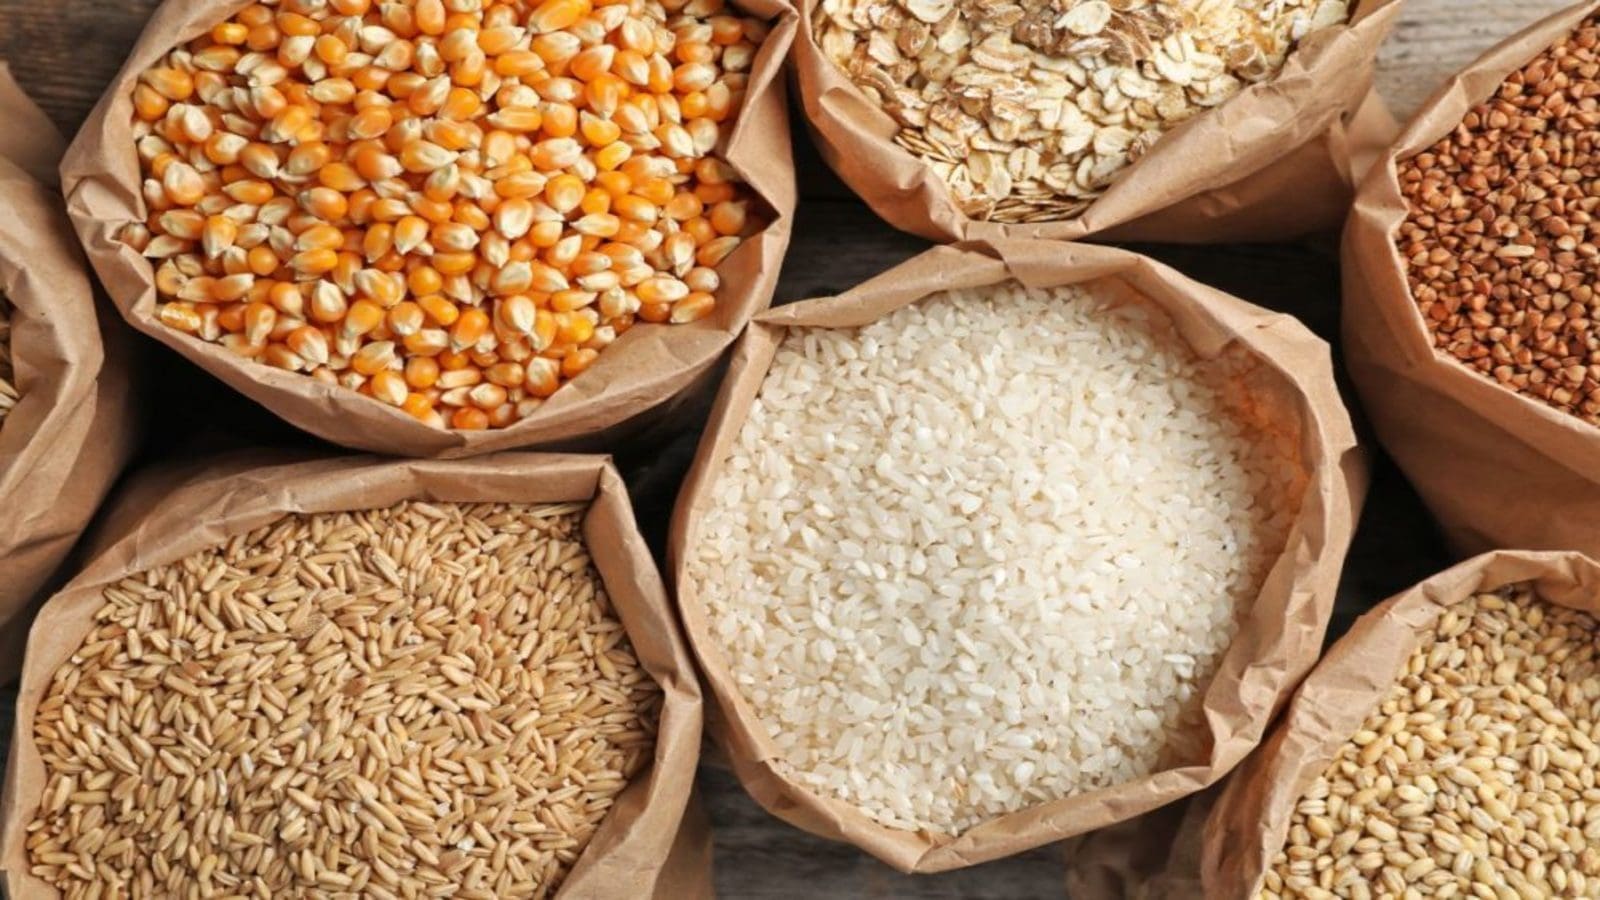 Zimbabwe liberalizes grain imports, scraps VAT on rice, maize